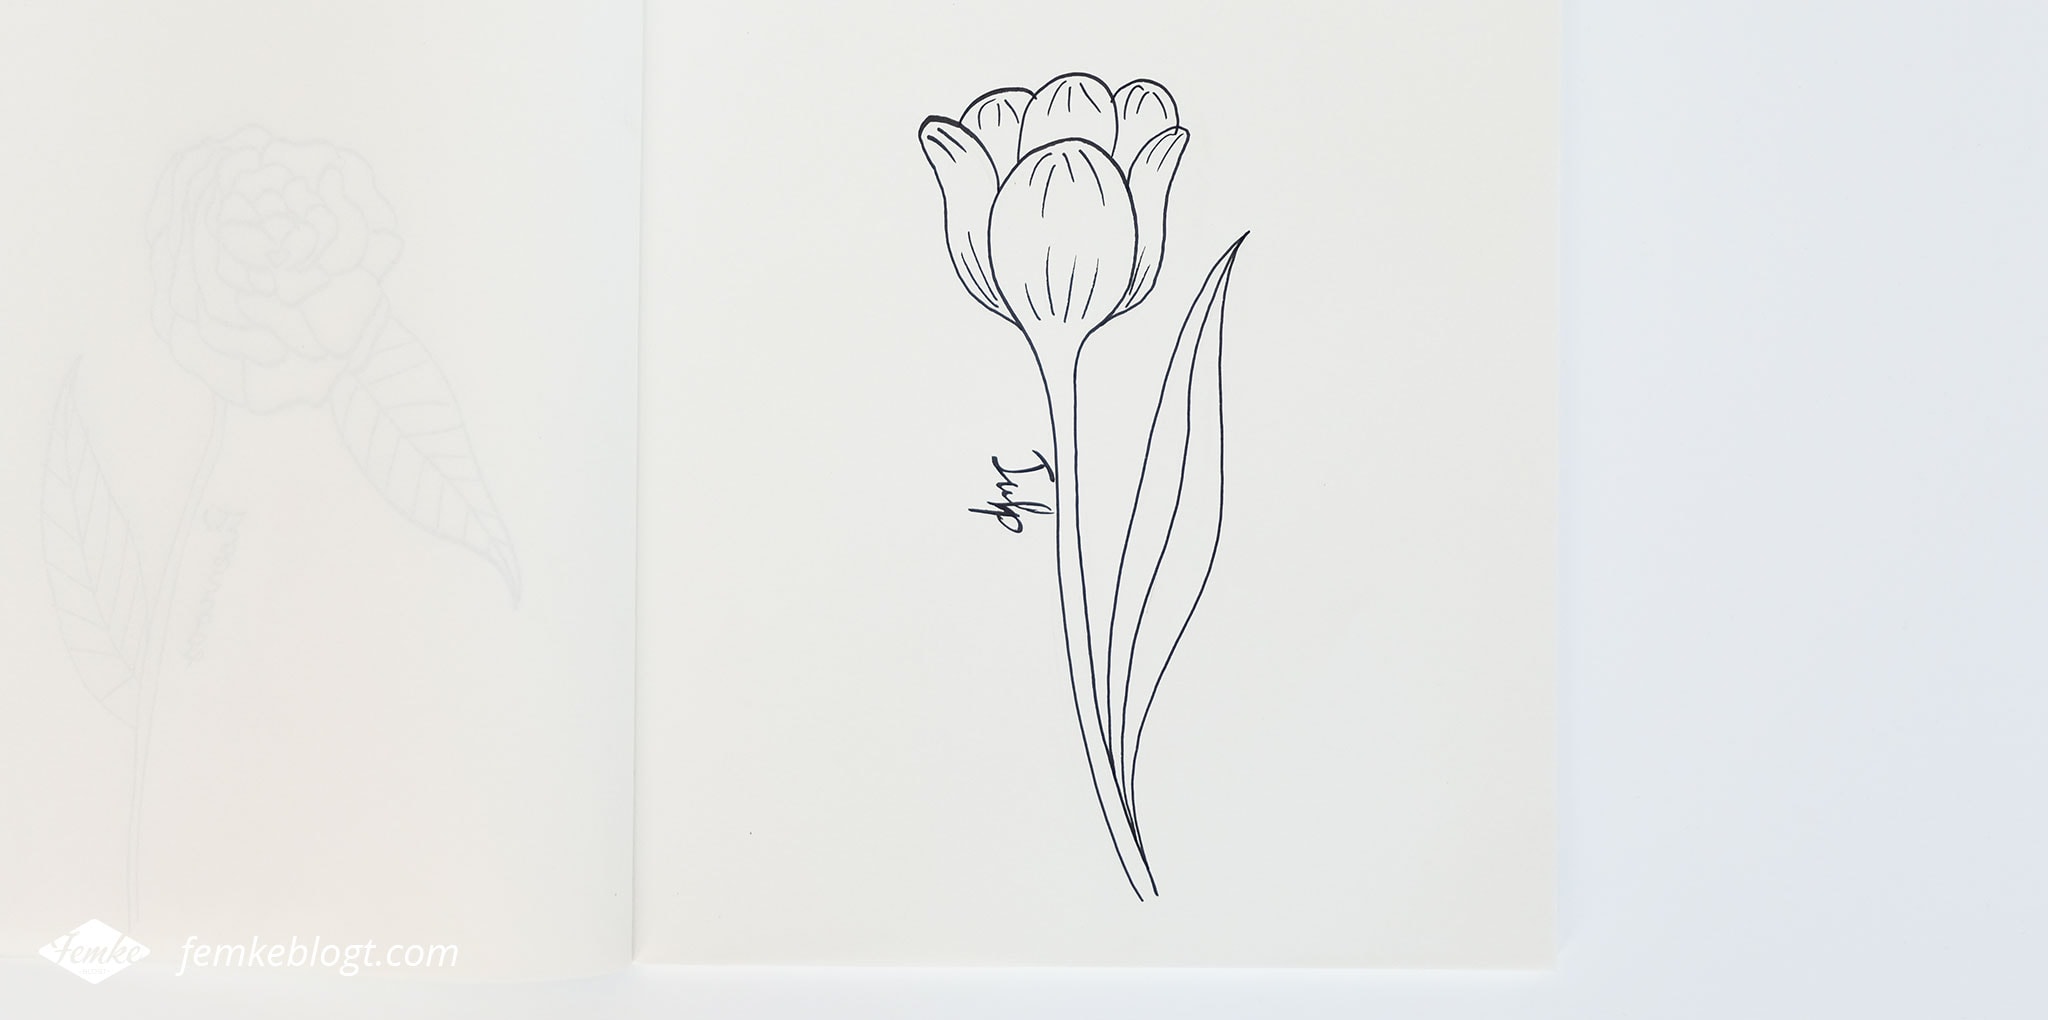 31 Dagen bloemen #5 | In deel 5 van de 31 Dagen bloemen serie gaan we de tulp tekenen